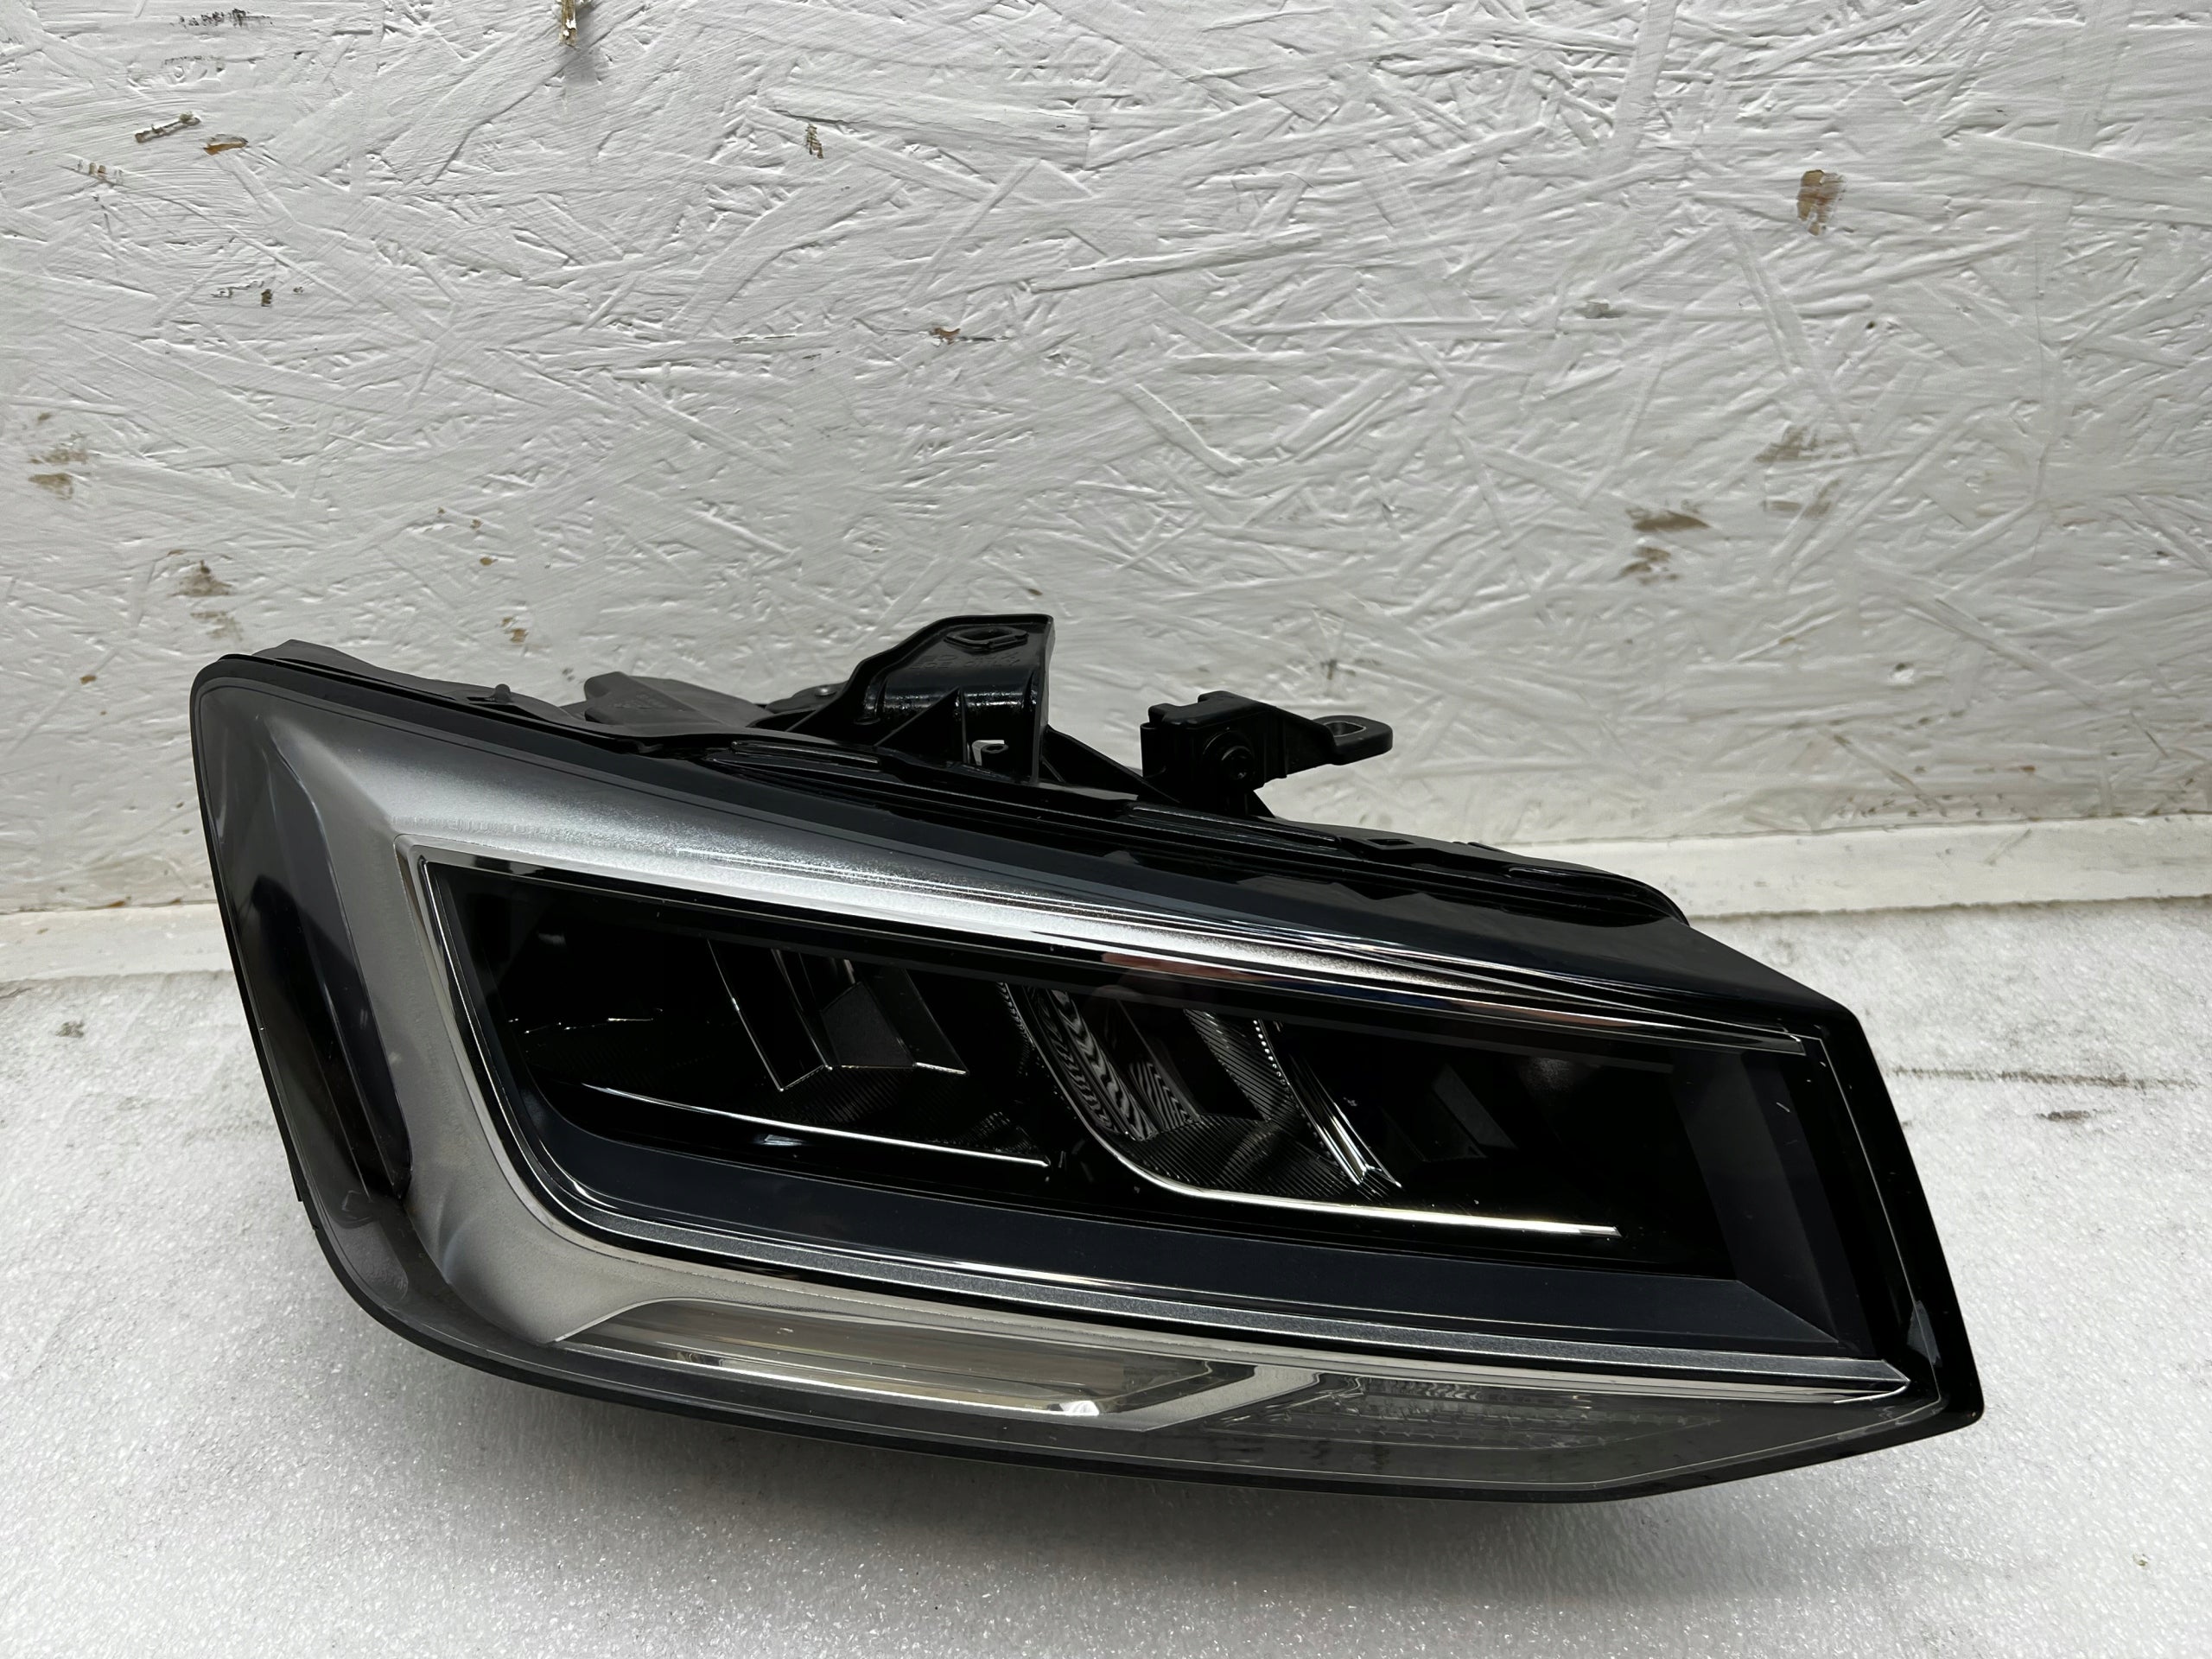 Frontscheinwerfer Audi A8 Q2 81A941012 Facelift Led Rechts  Headlight